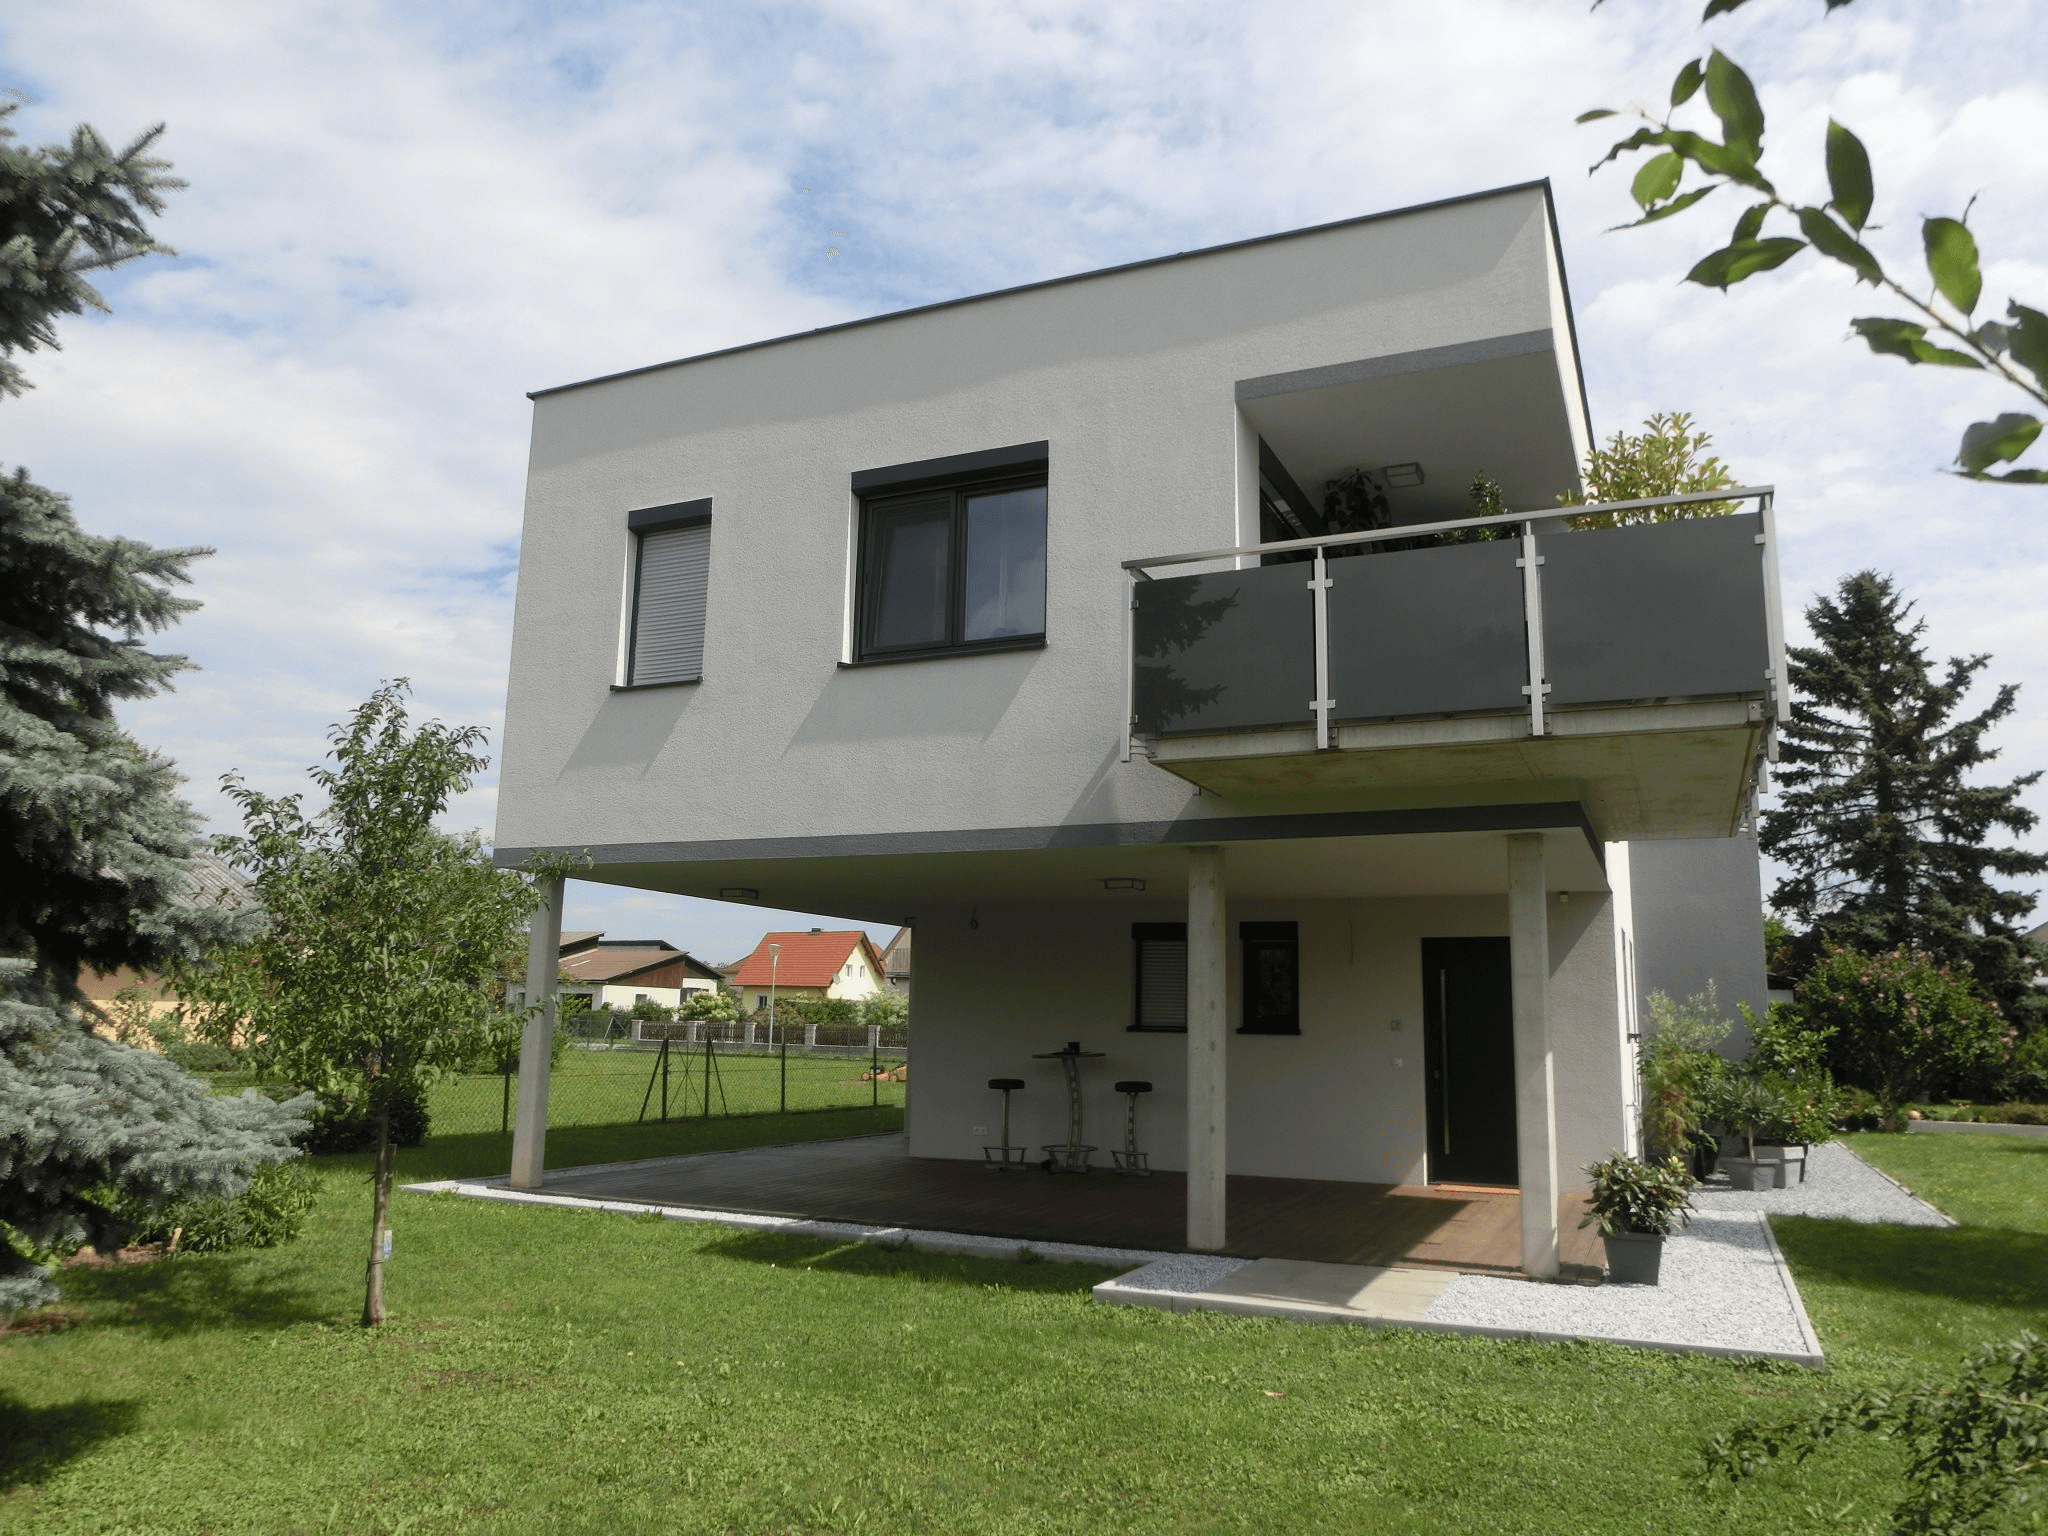 Vorschau - Foto 2 von Boyneburg-Lengsfeld & Purkowitzer Immobilien KG